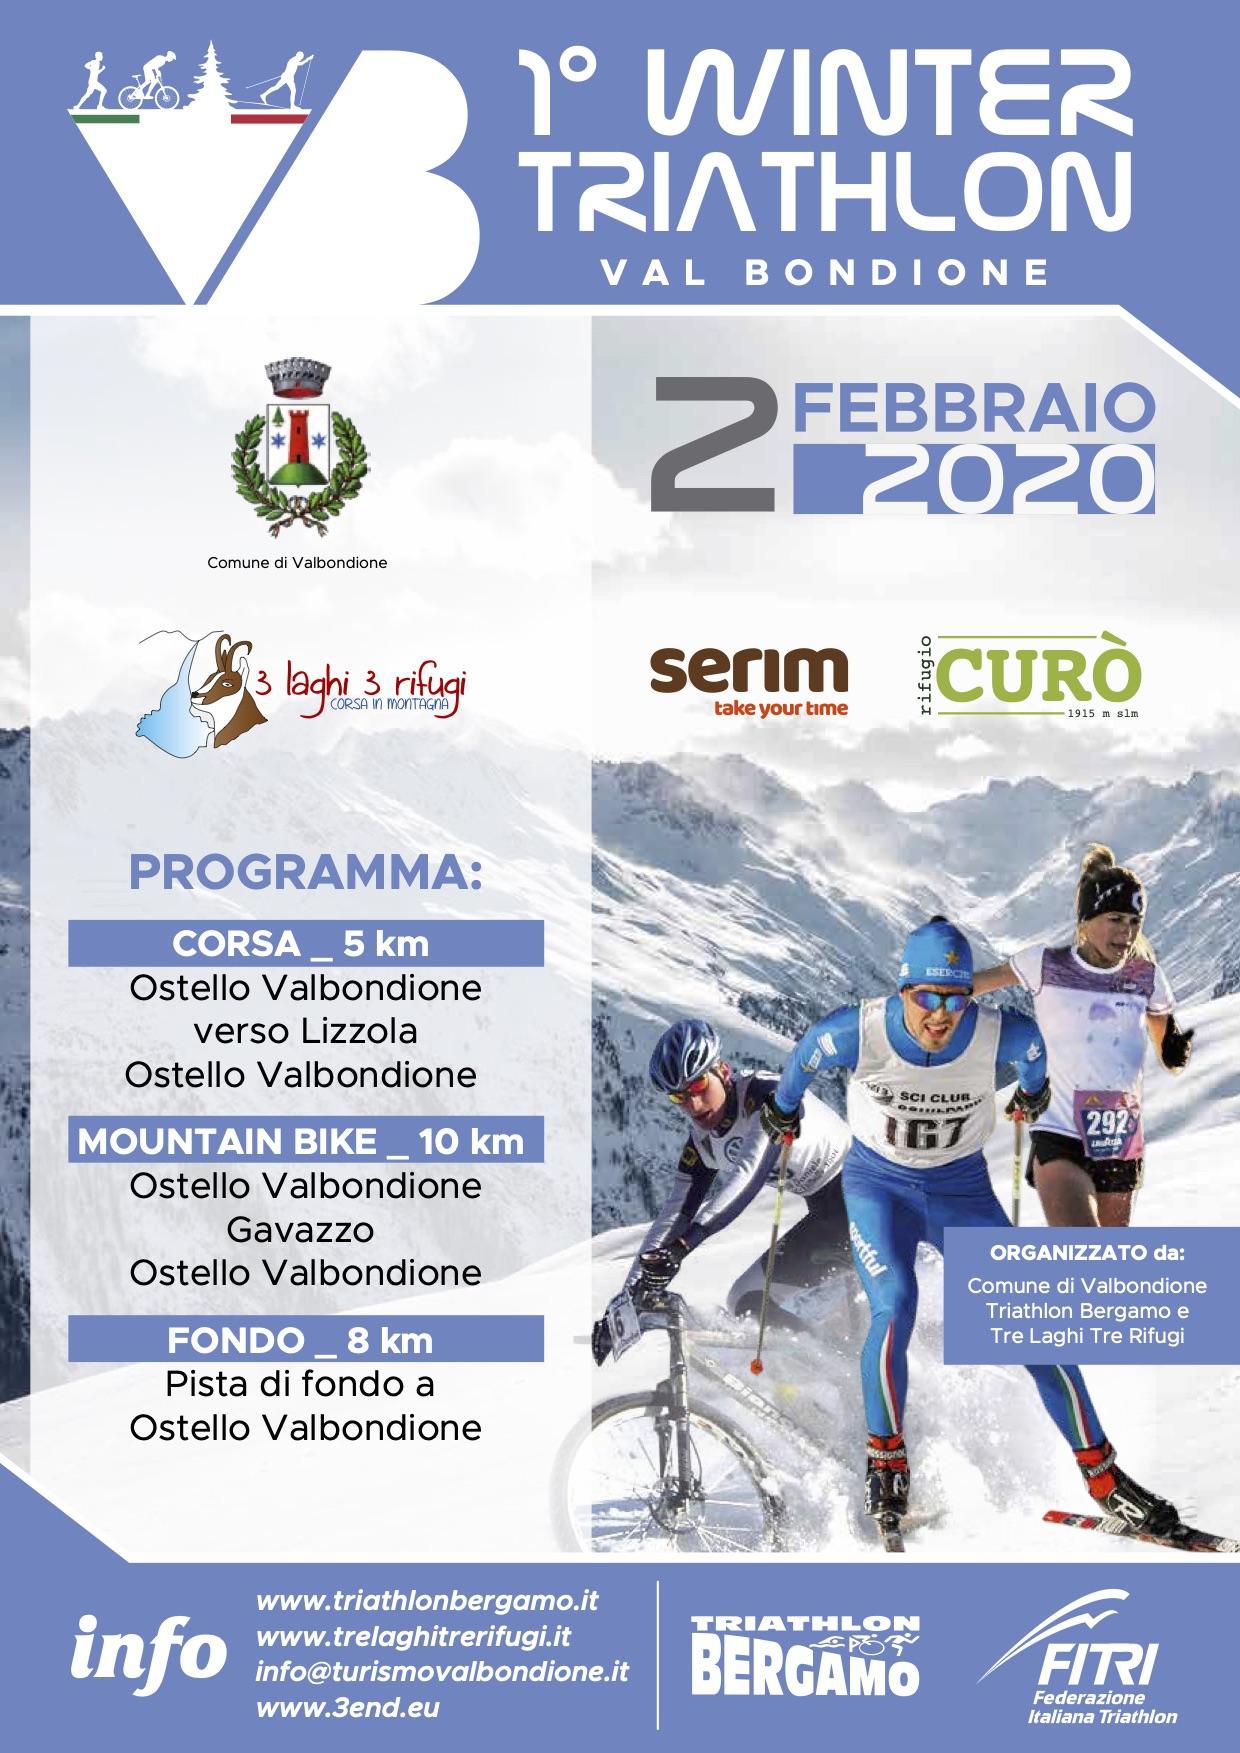 images/2020/Gare_ITALIA/Valbondione_Winter_Triathlon/medium/WinterTriValbondione2020_Locandina.jpg